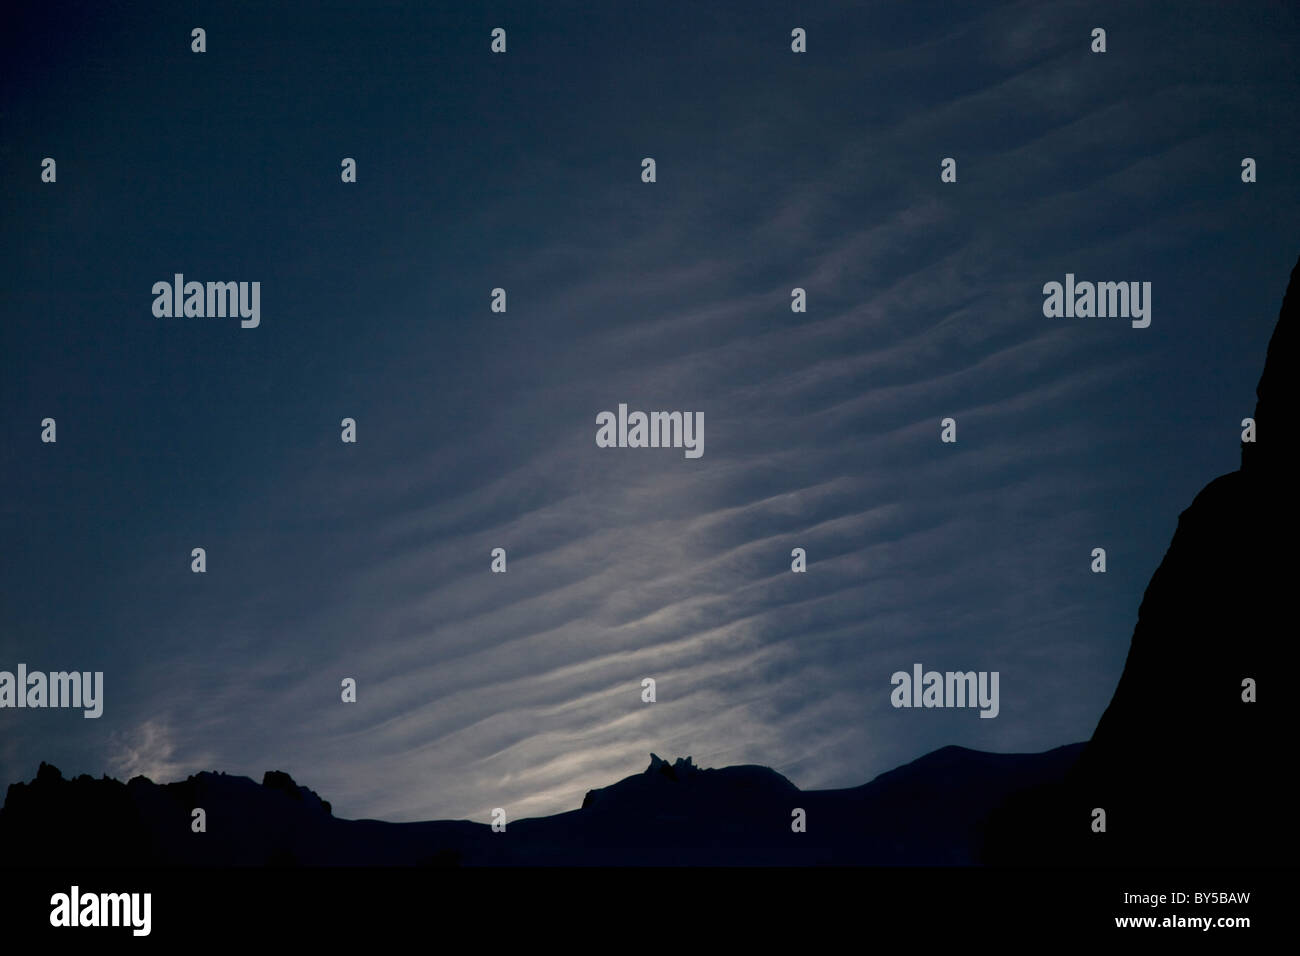 Dettaglio delle montagne di silhouette e nuvole nel cielo, Parco Nazionale Torres del Paine, Cile Foto Stock